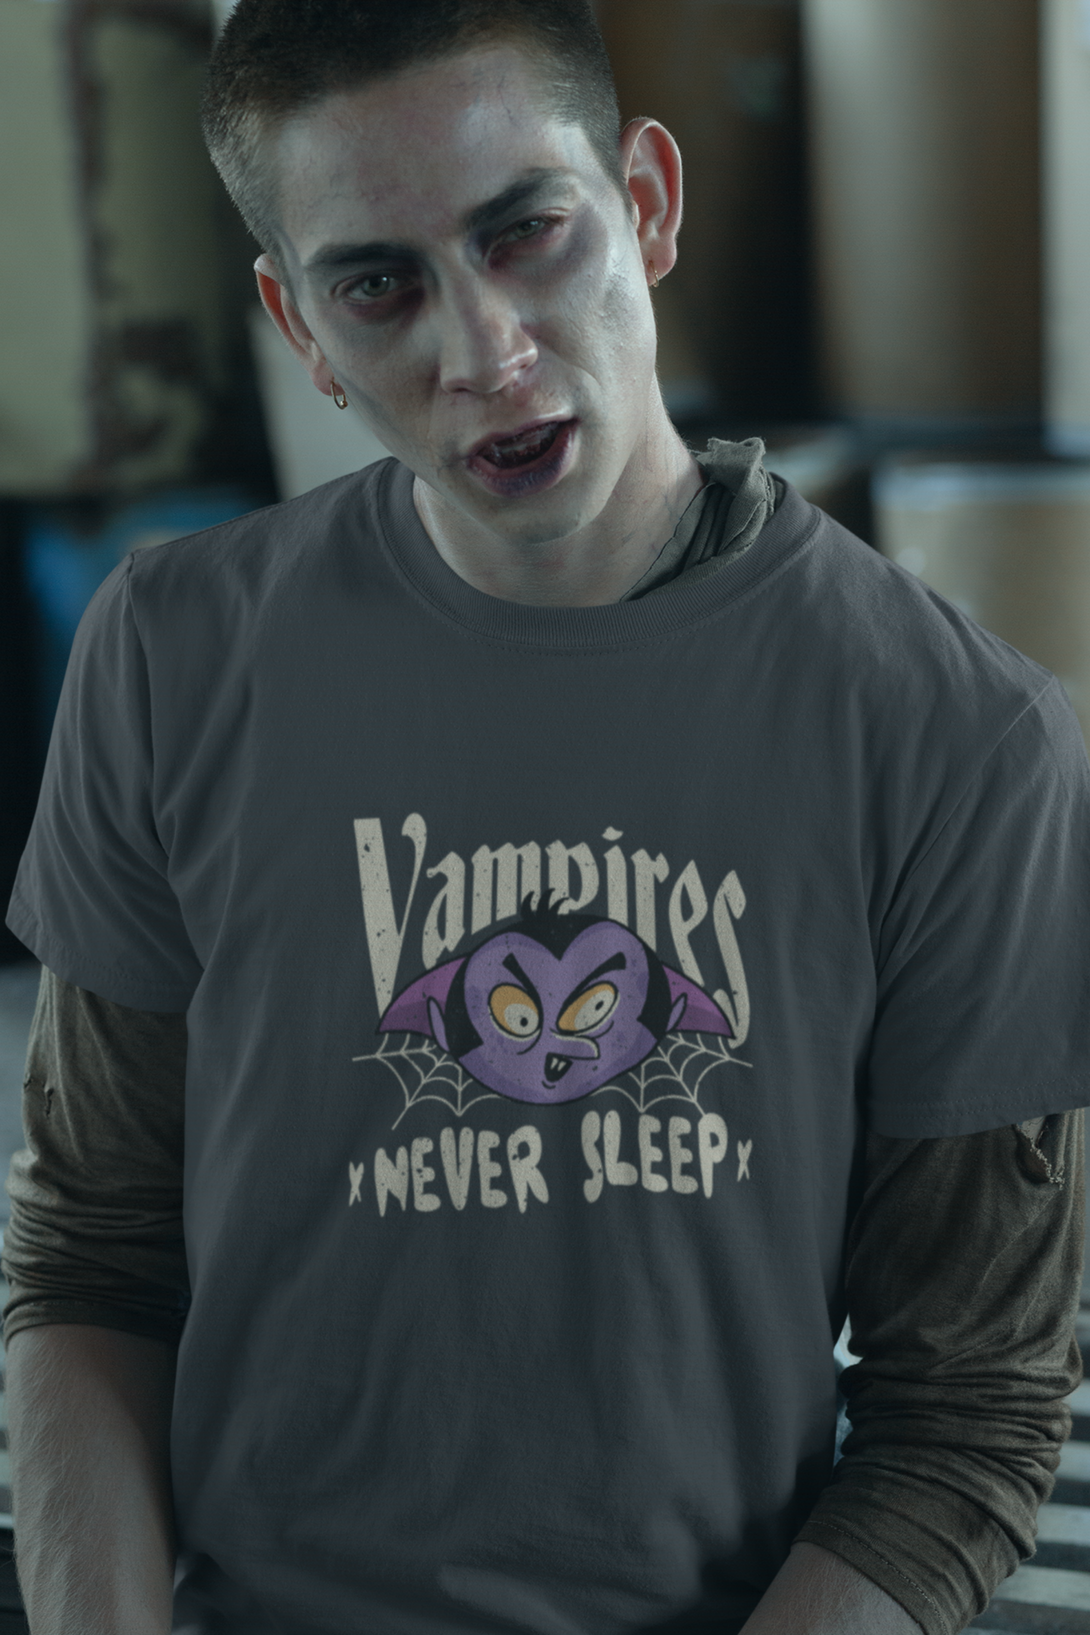 Vampires Never Sleep Printed T-Shirt For Men - WowWaves - 4